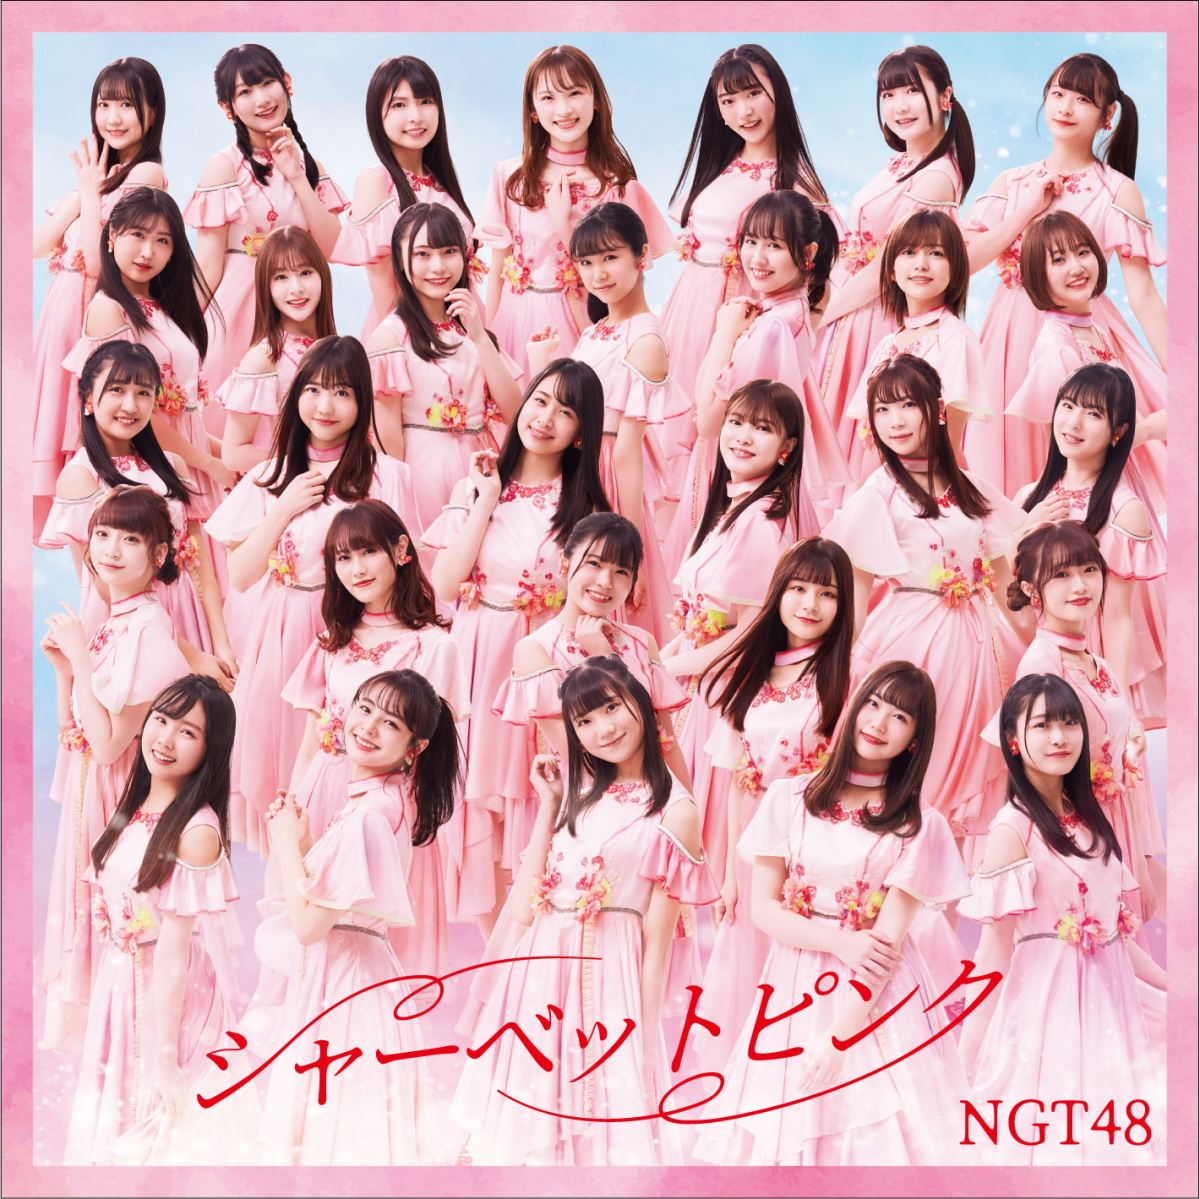 Cover art for『NGT48 - Koukai Bakkari』from the release『Sherbet Pink』